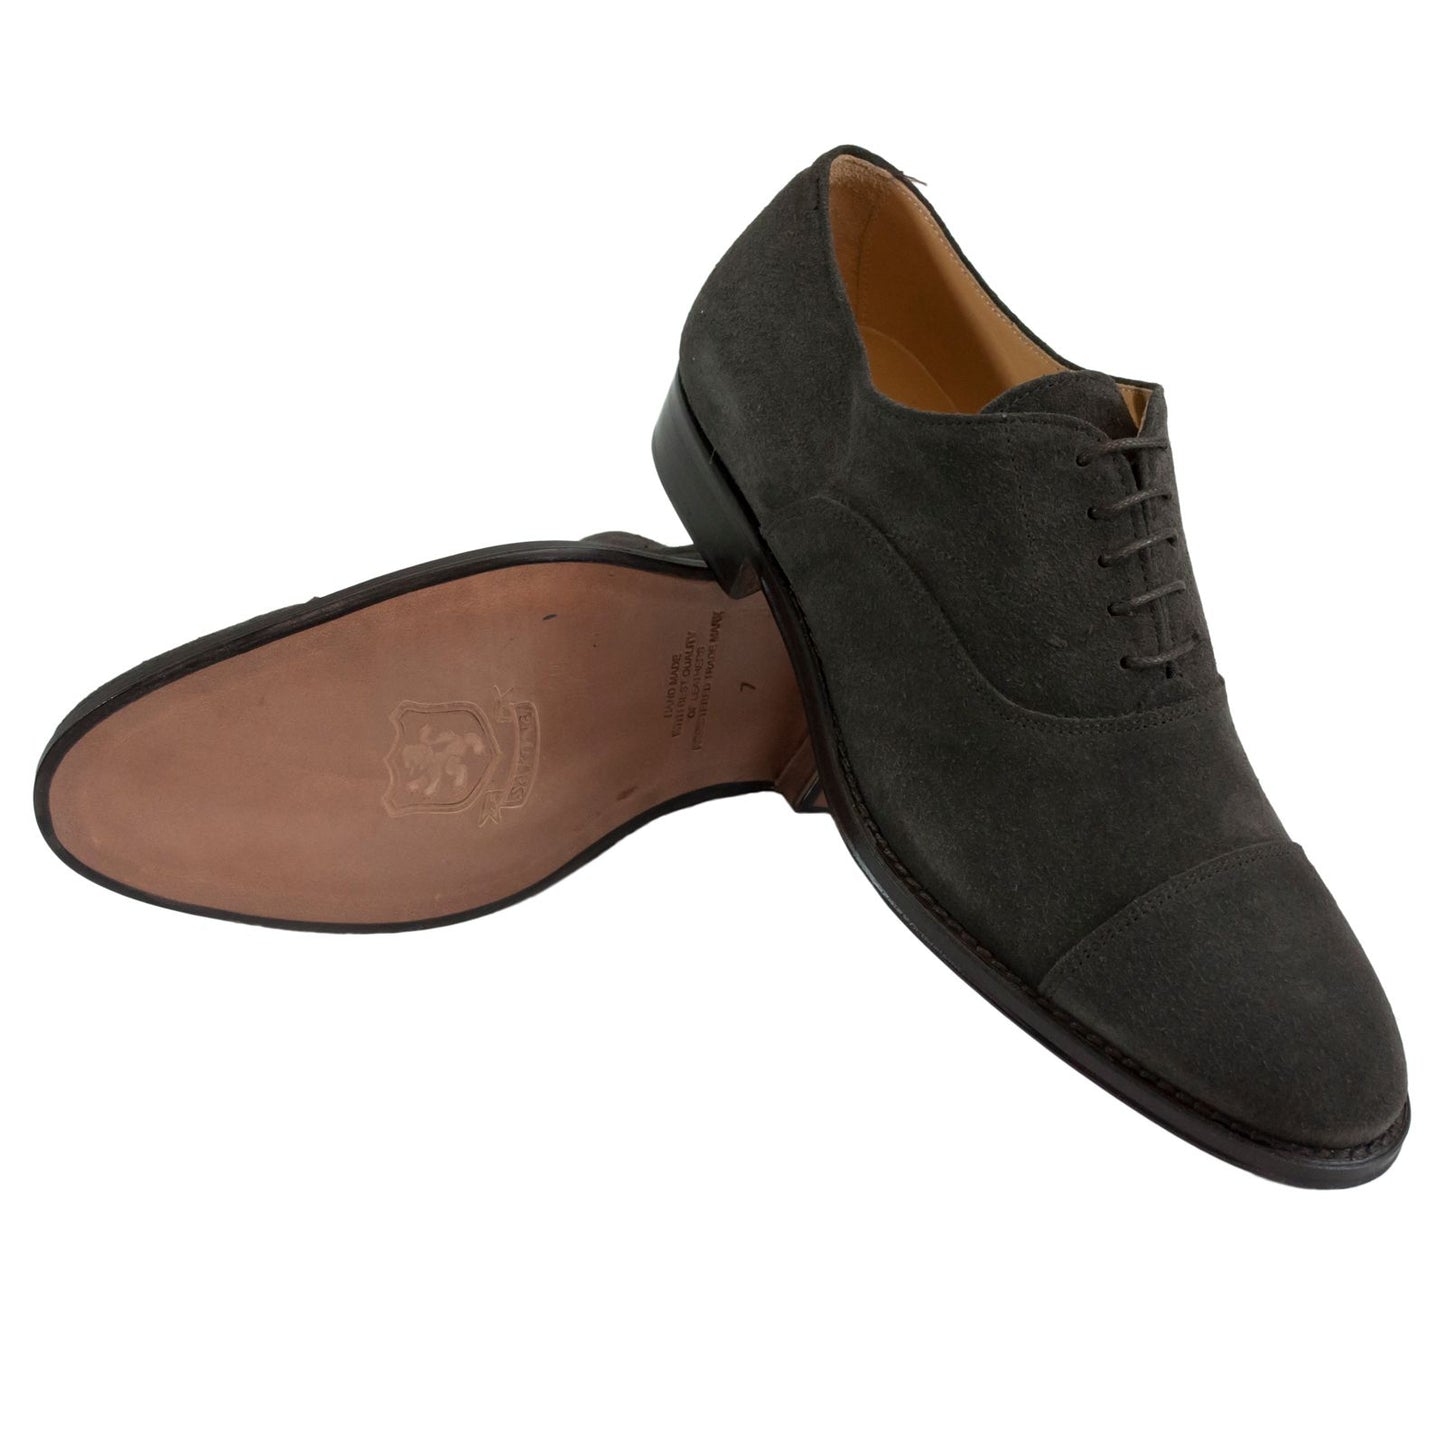 Elegant Dark Brown Suede Formal Shoes